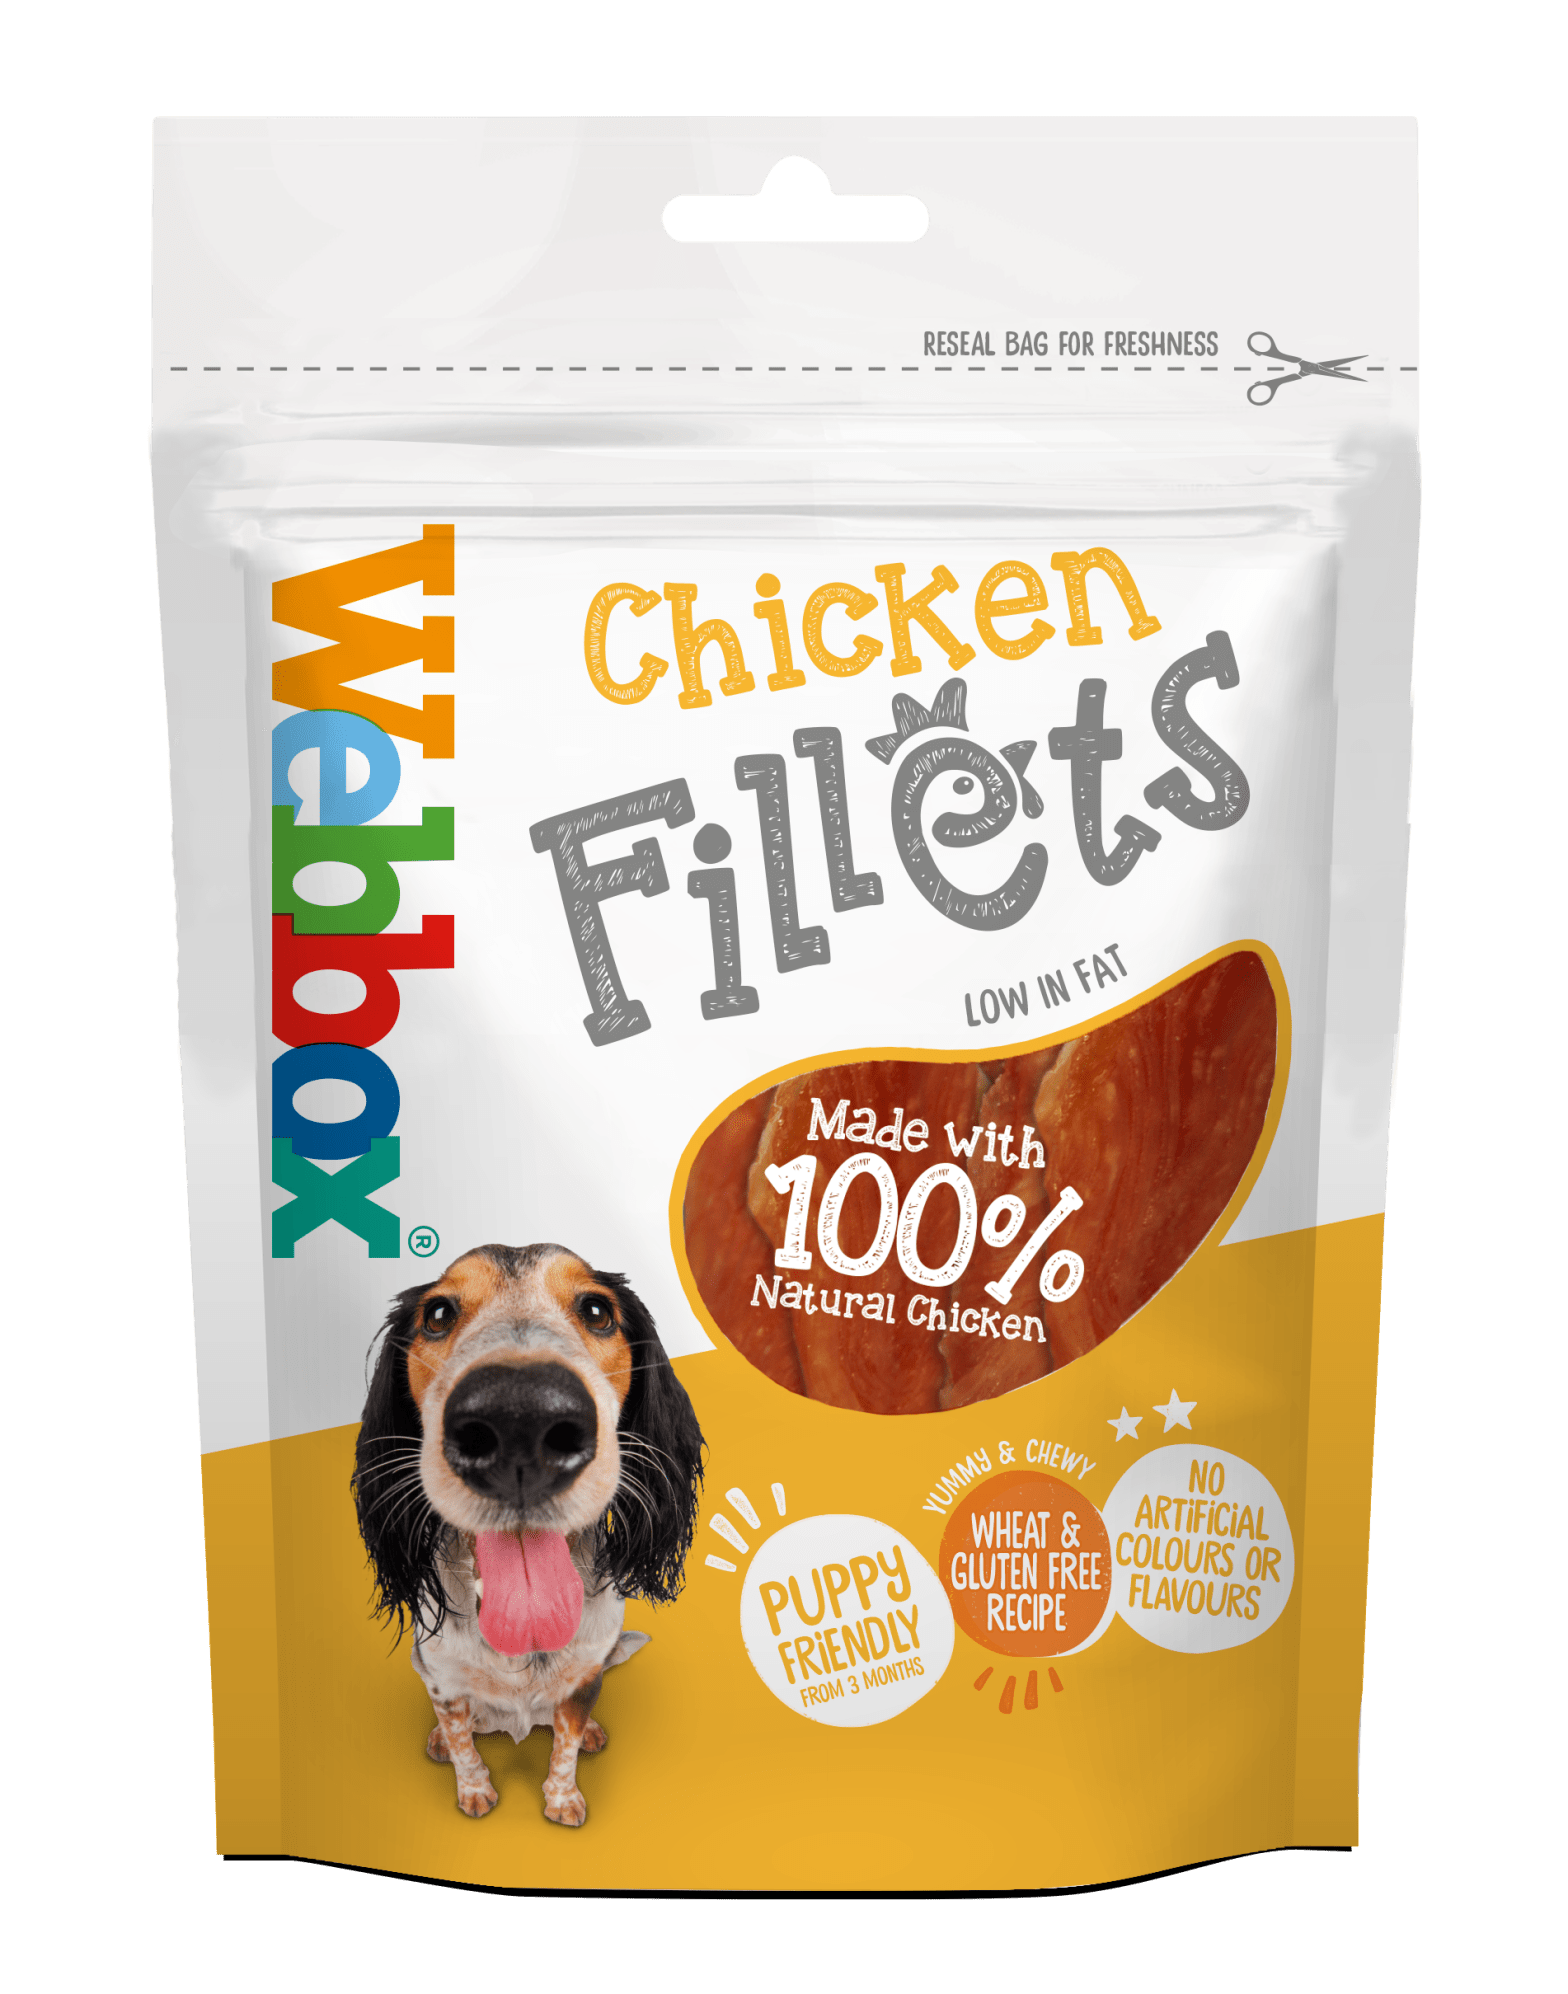 Webbox Chicken Fillets Dog Treats